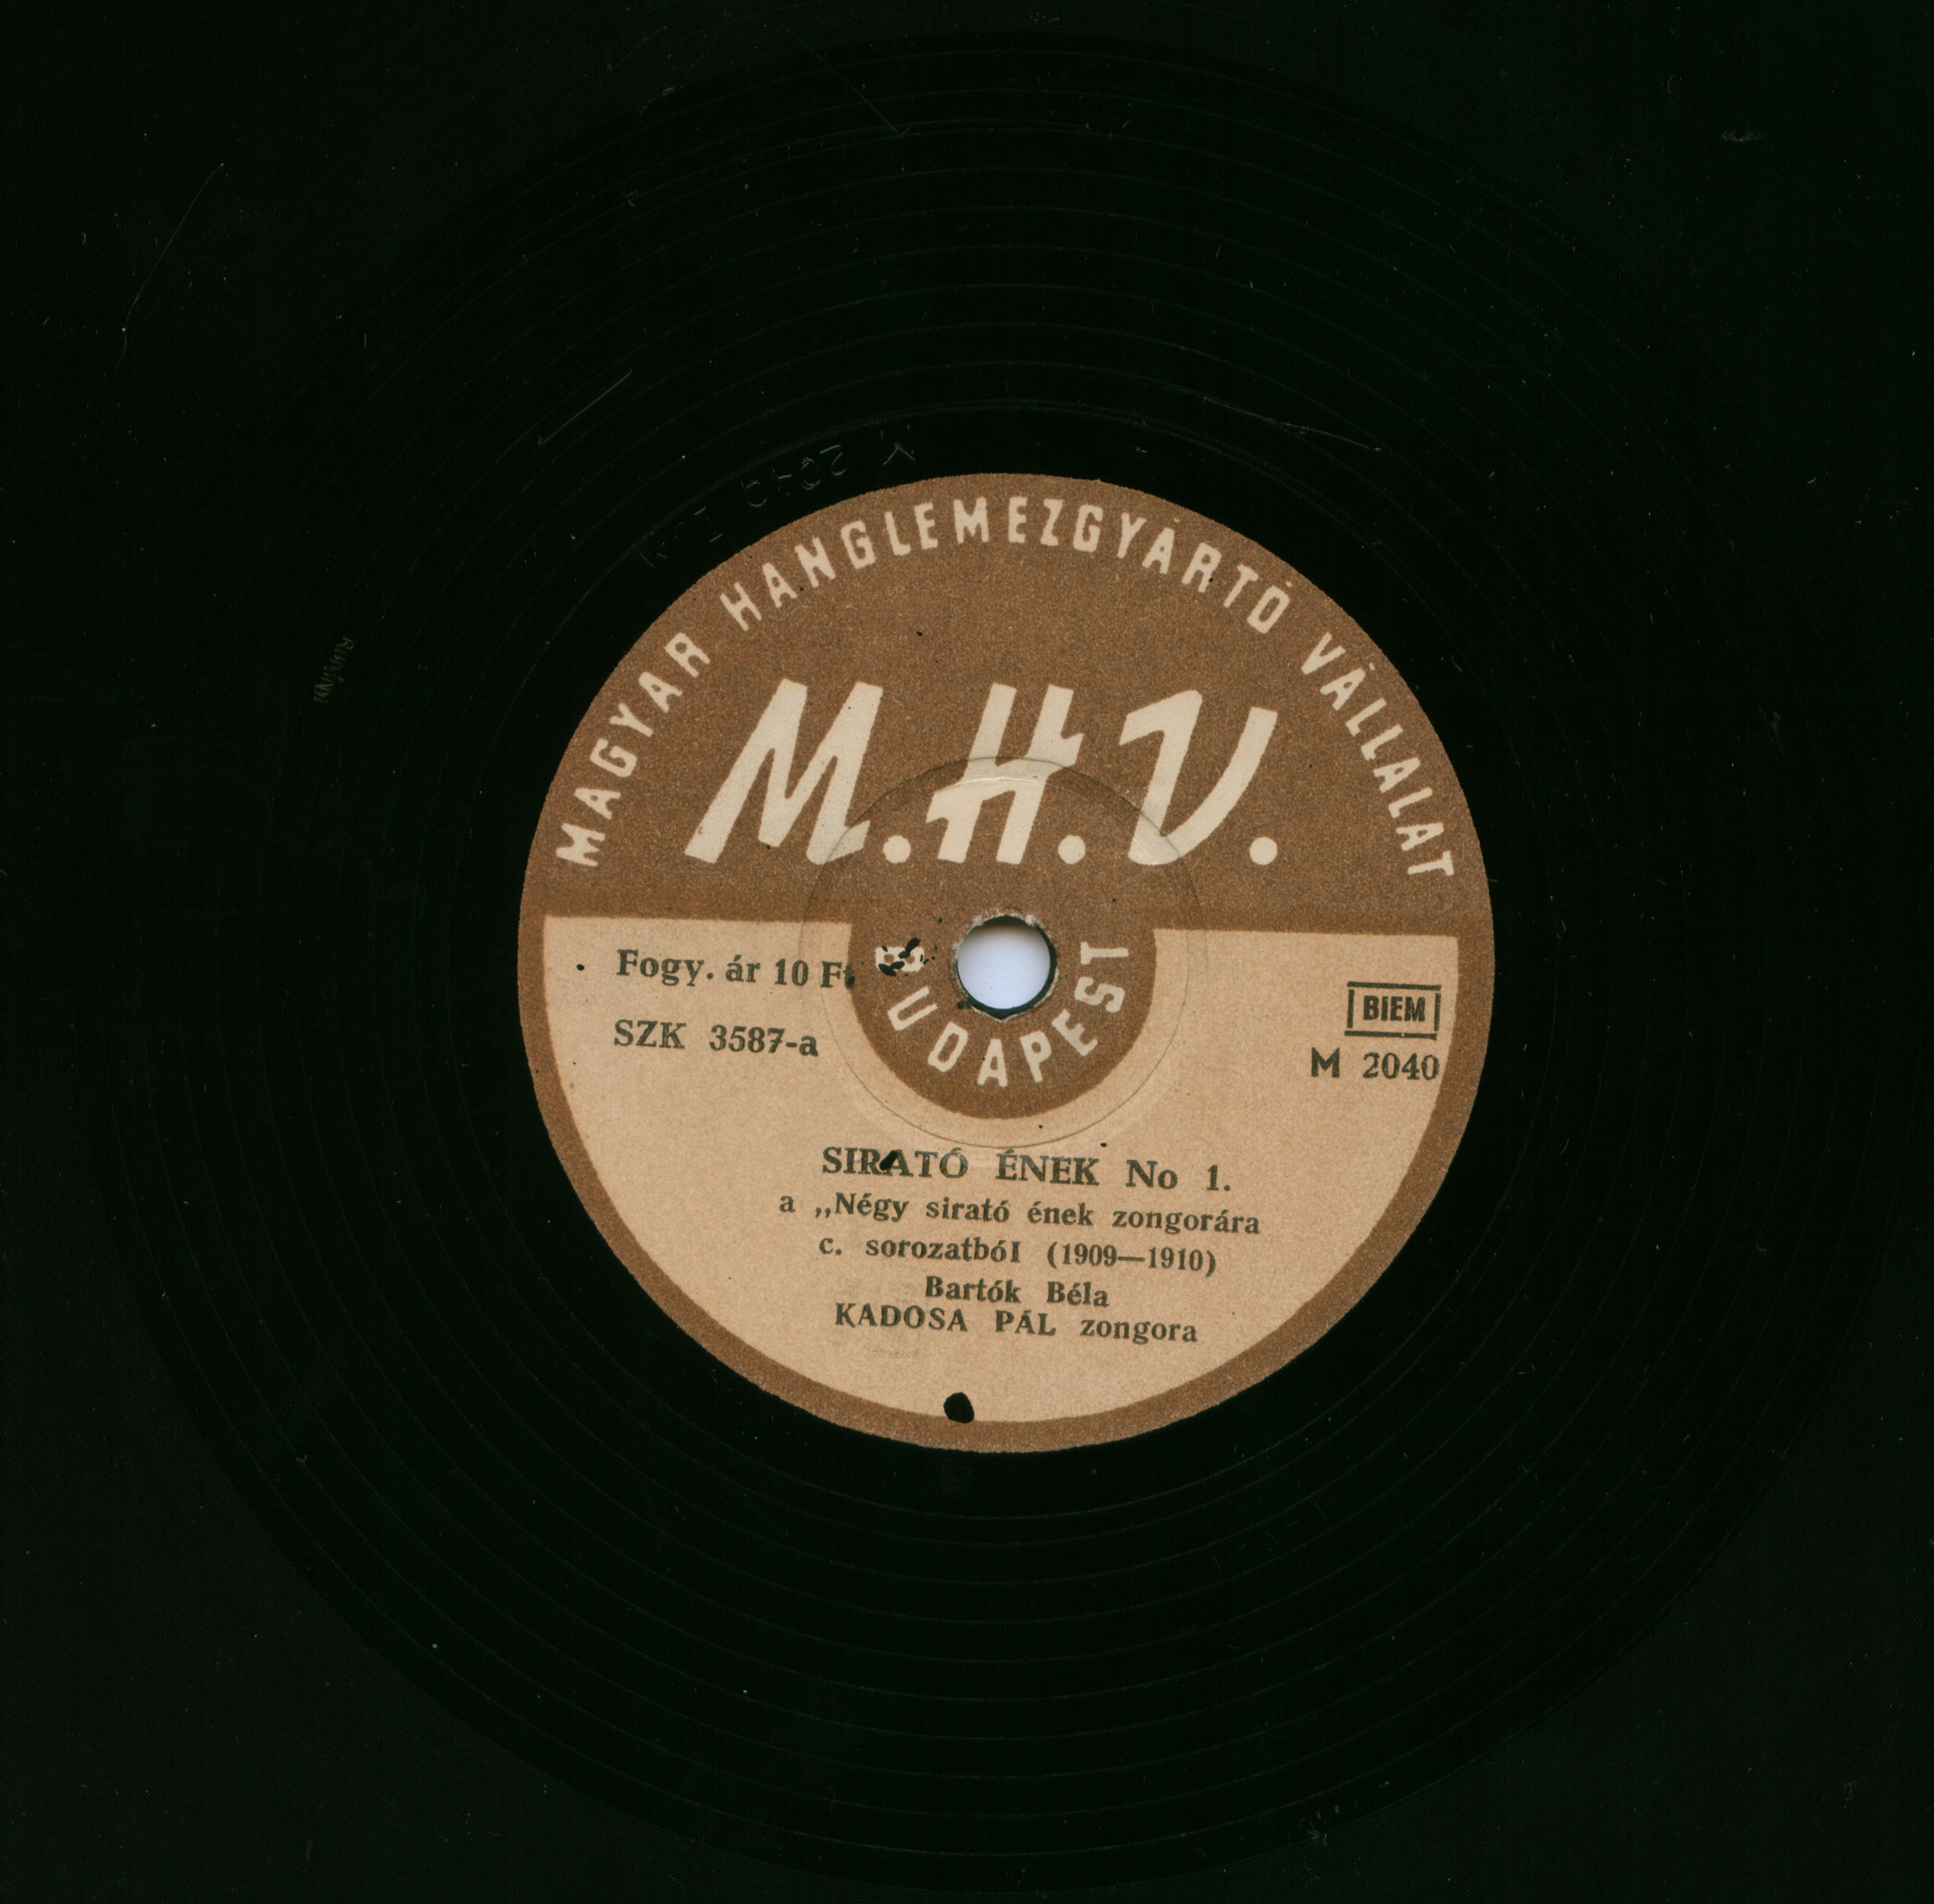 Sirató ének No 1., No 3. a "Négy sirató ének zongorára" c. sorozatból : (1909-1910)